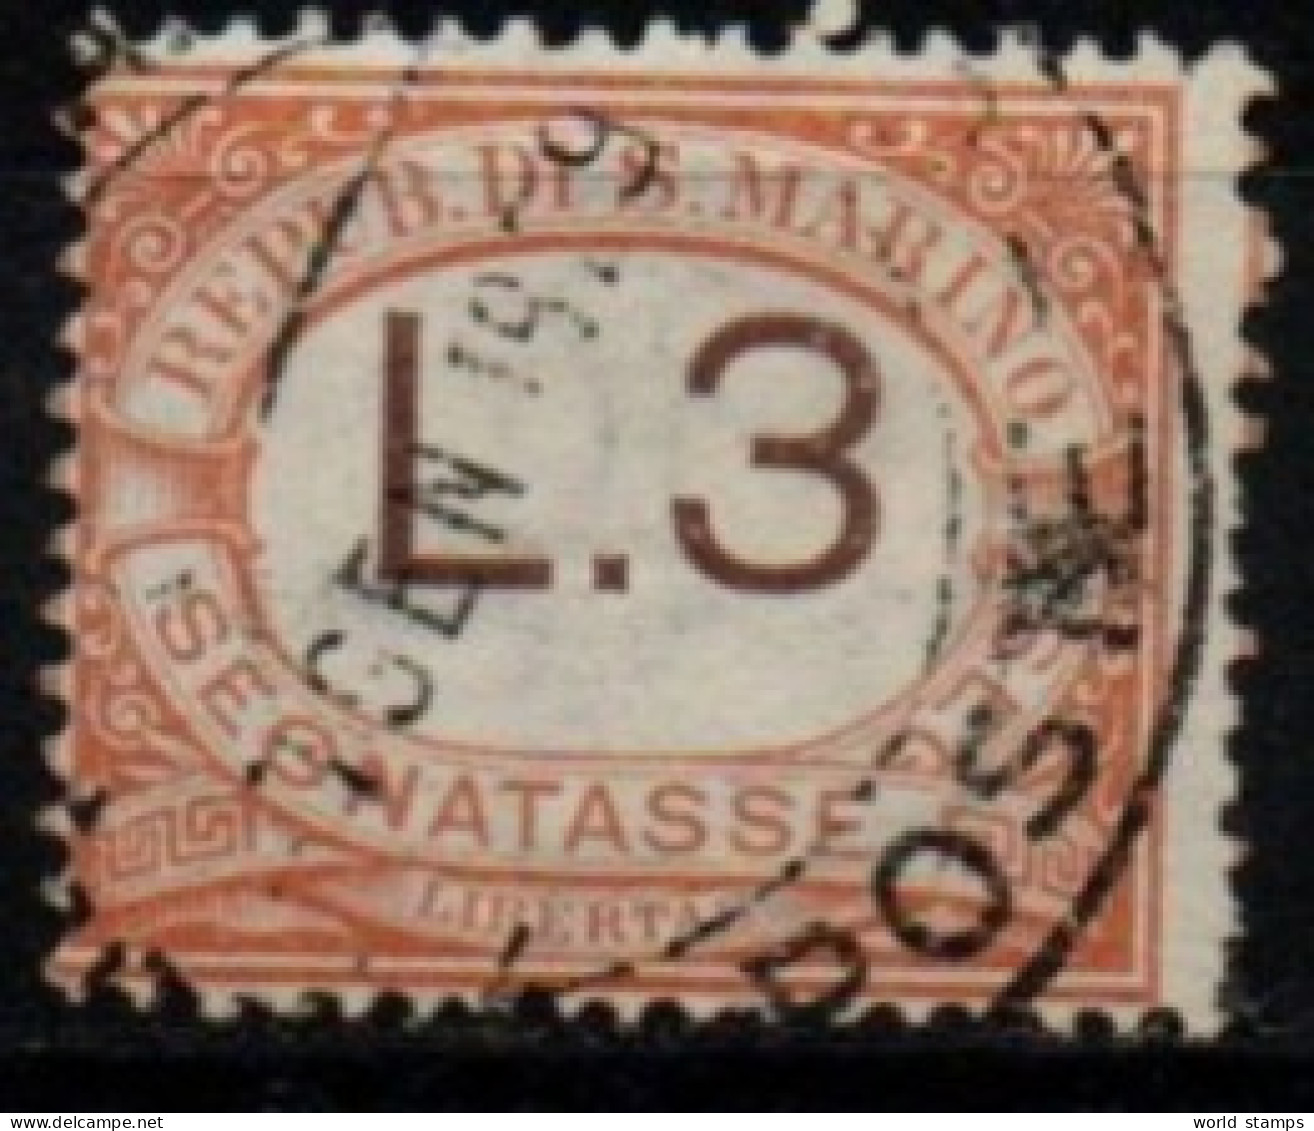 SAINT-MARIN 1925-8 O - Portomarken